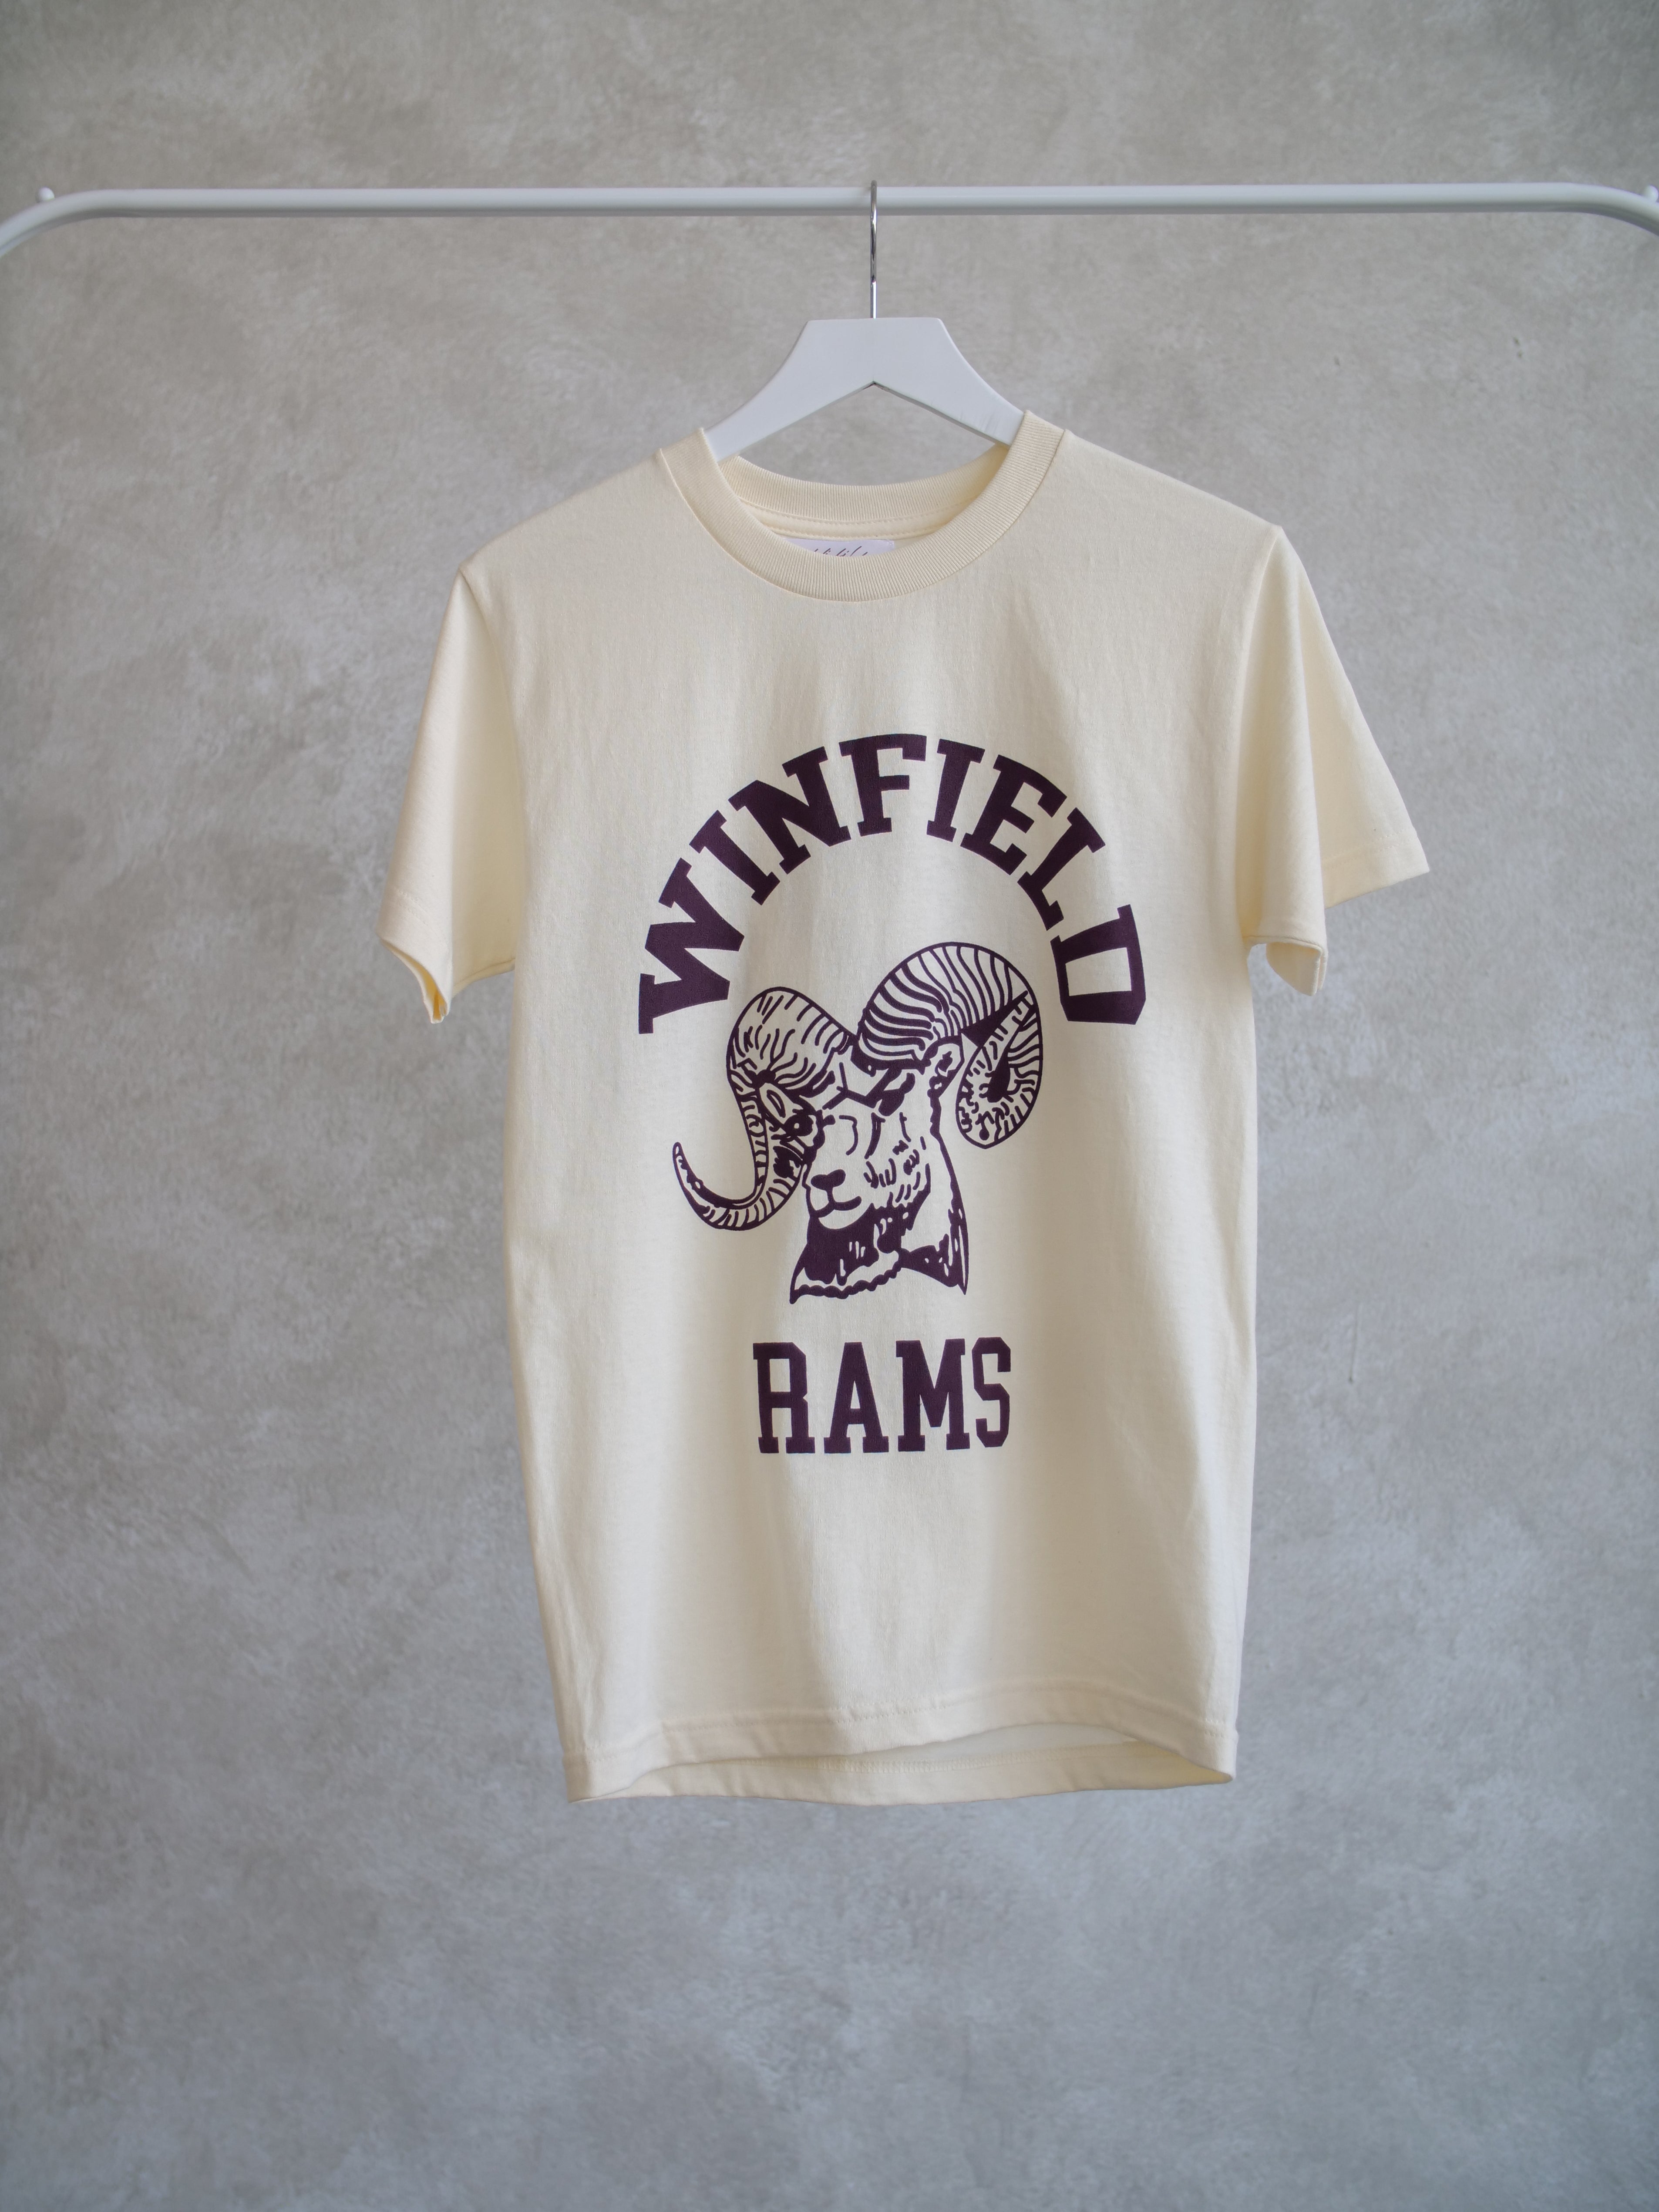 Winfield Mens Rams T Shirt